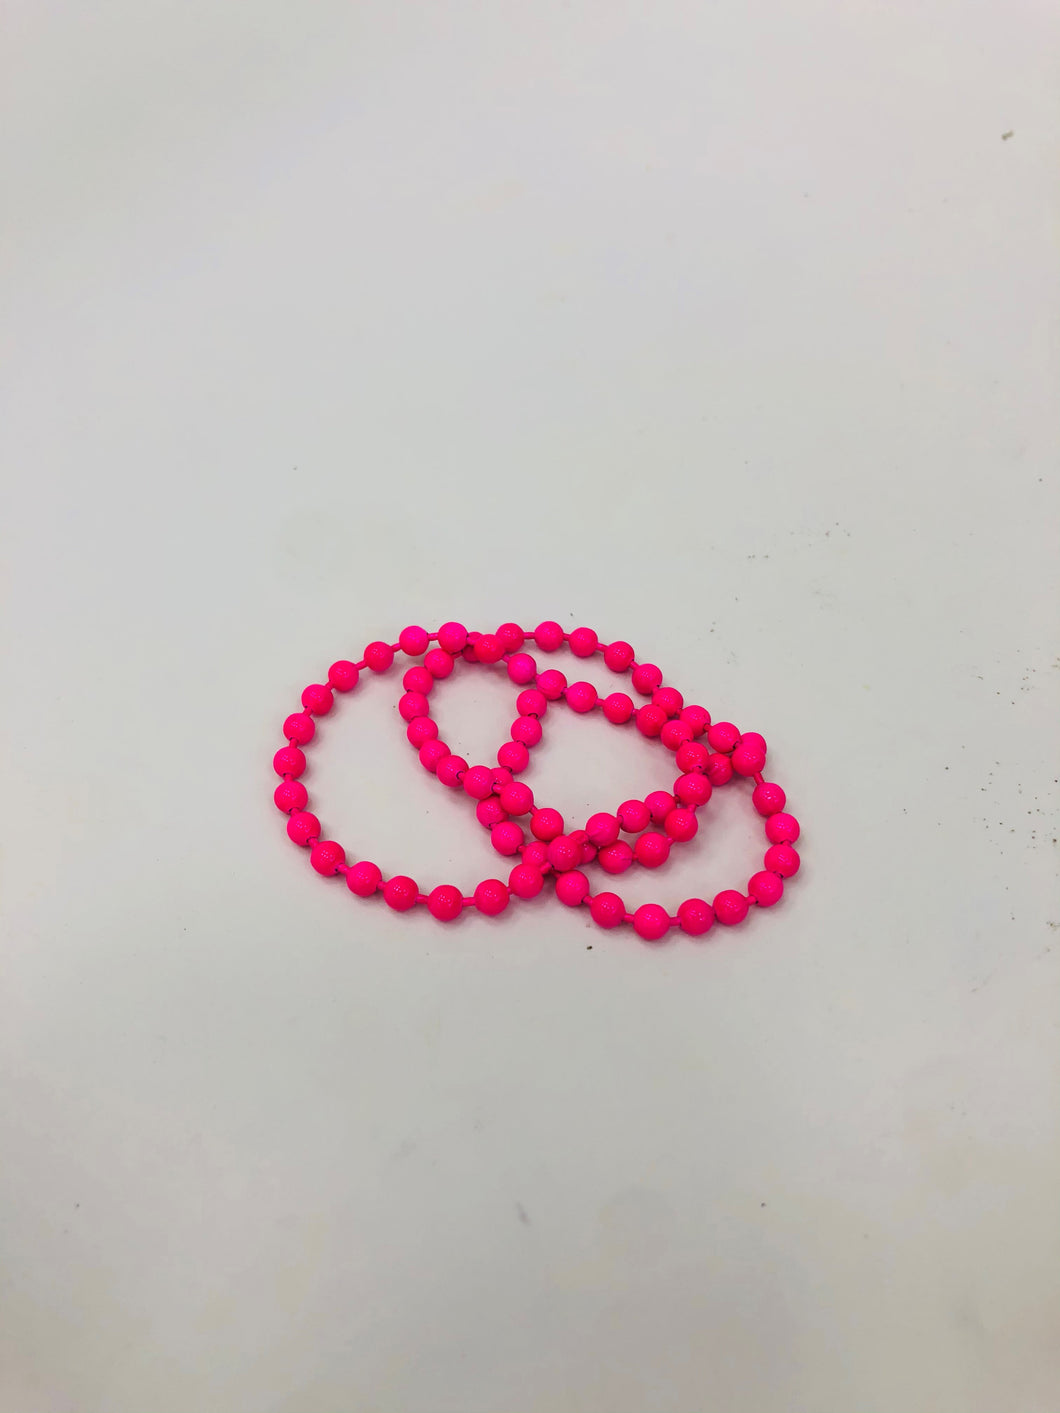 Flourescent Bead Chain